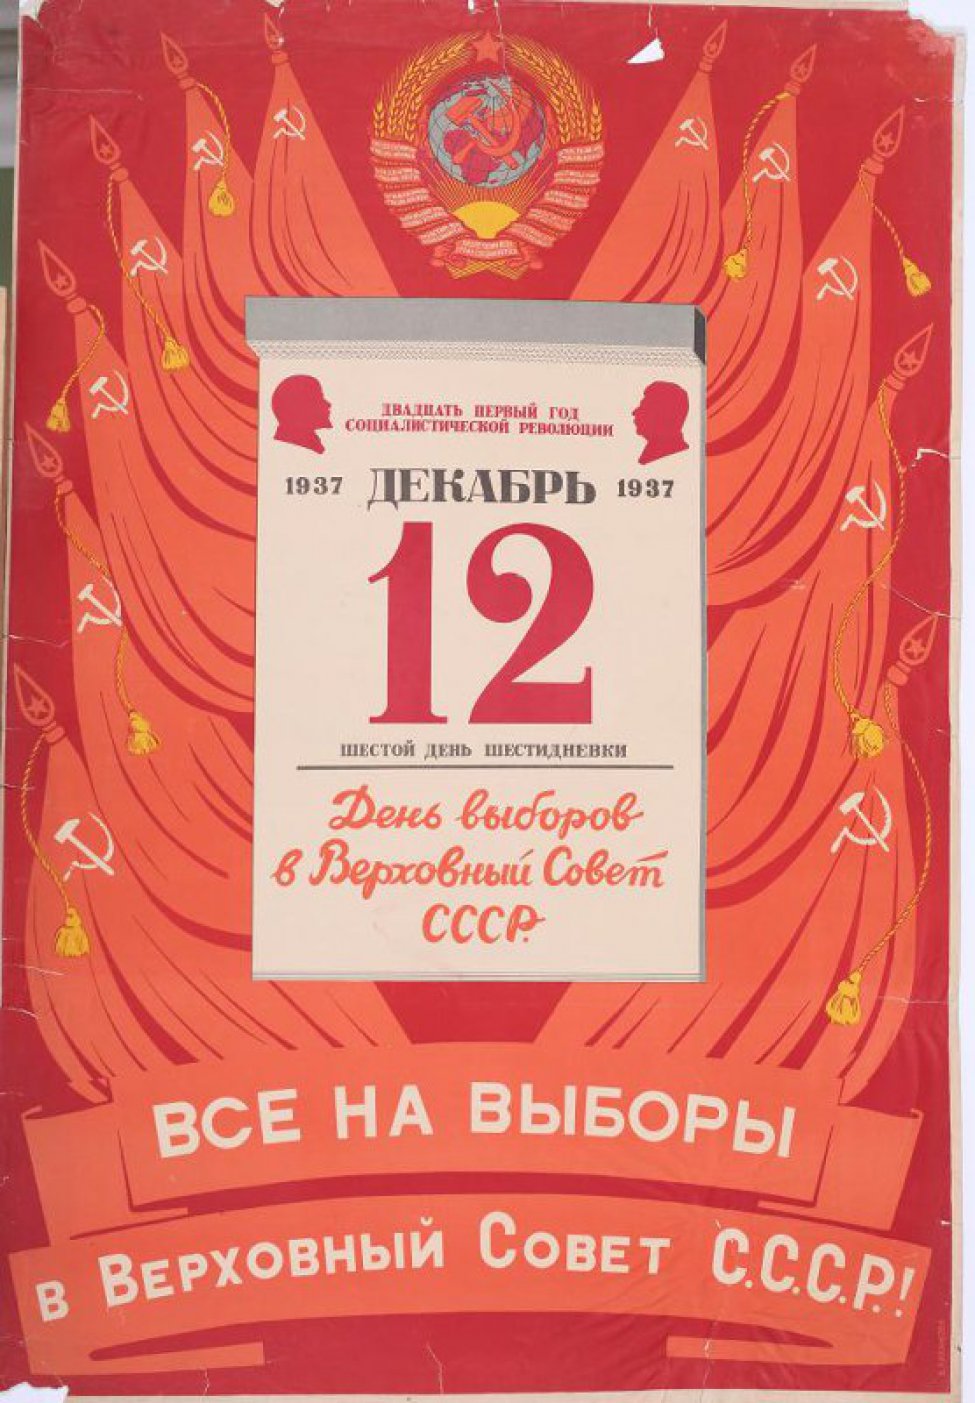 Изображен календарный лист за 12 декабря 1937г. на красных знаменах. В верху герб СССР.